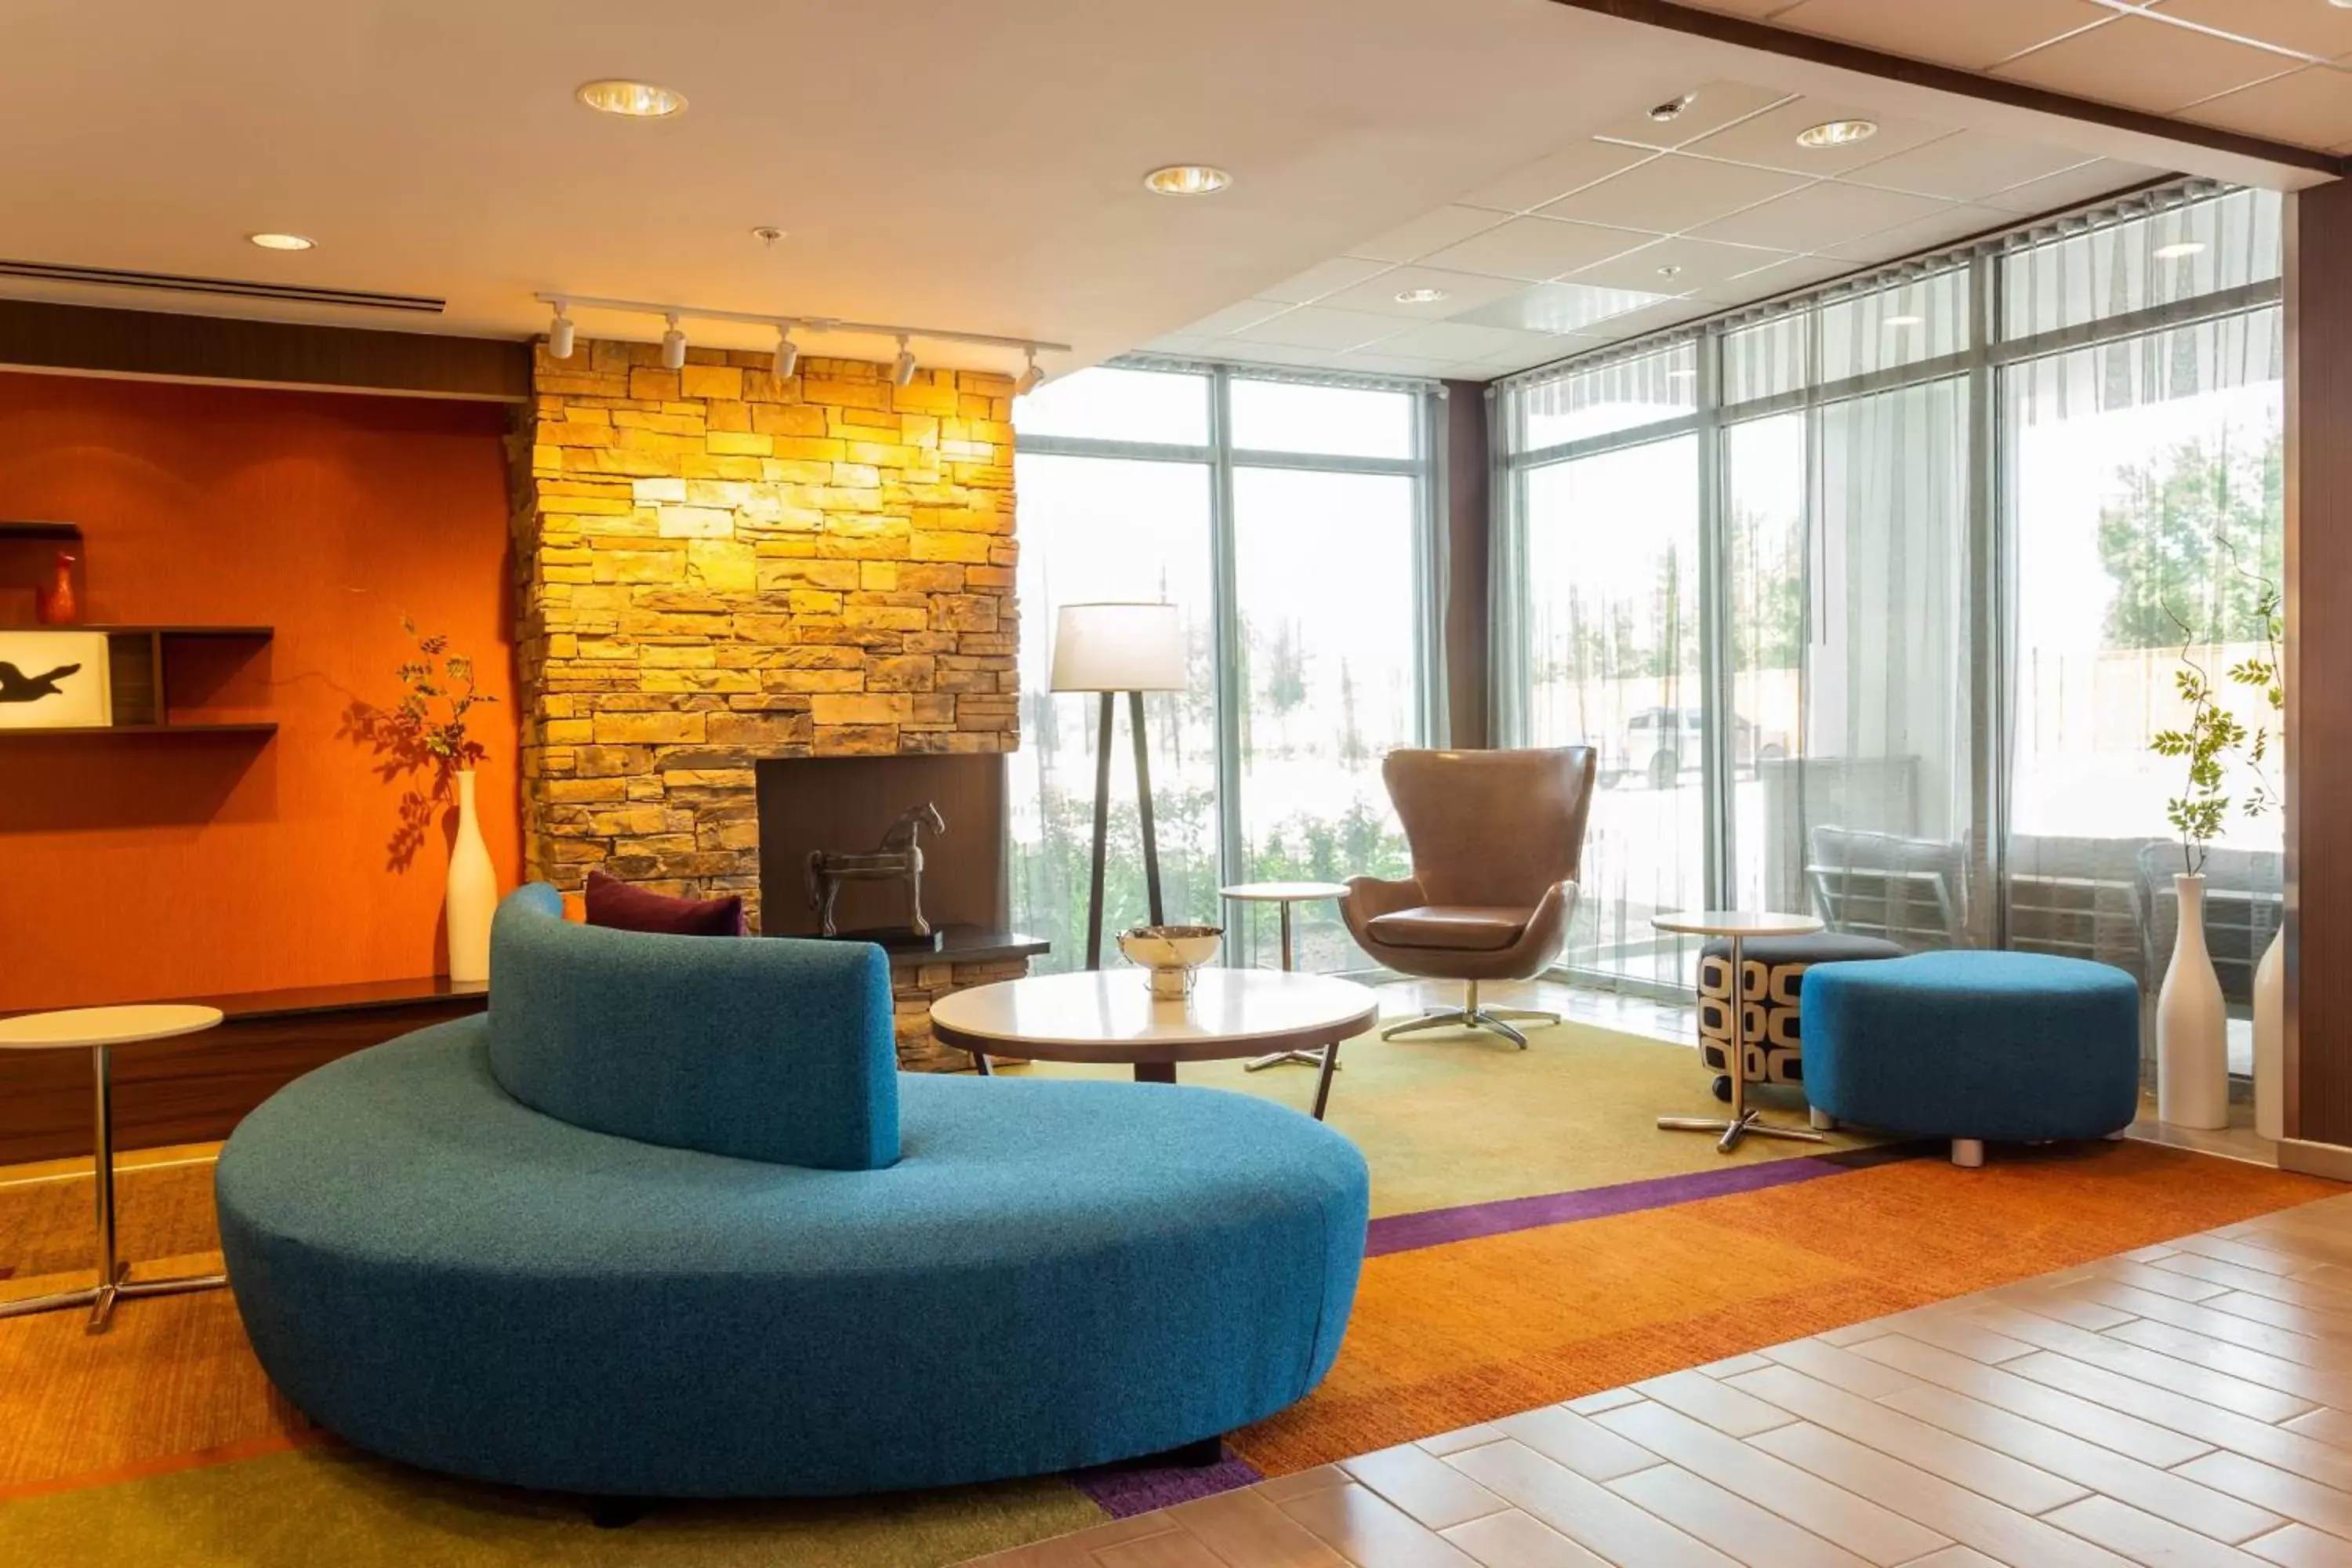 Lobby or reception, Lobby/Reception in Fairfield Inn & Suites by Marriott Bay City, Texas